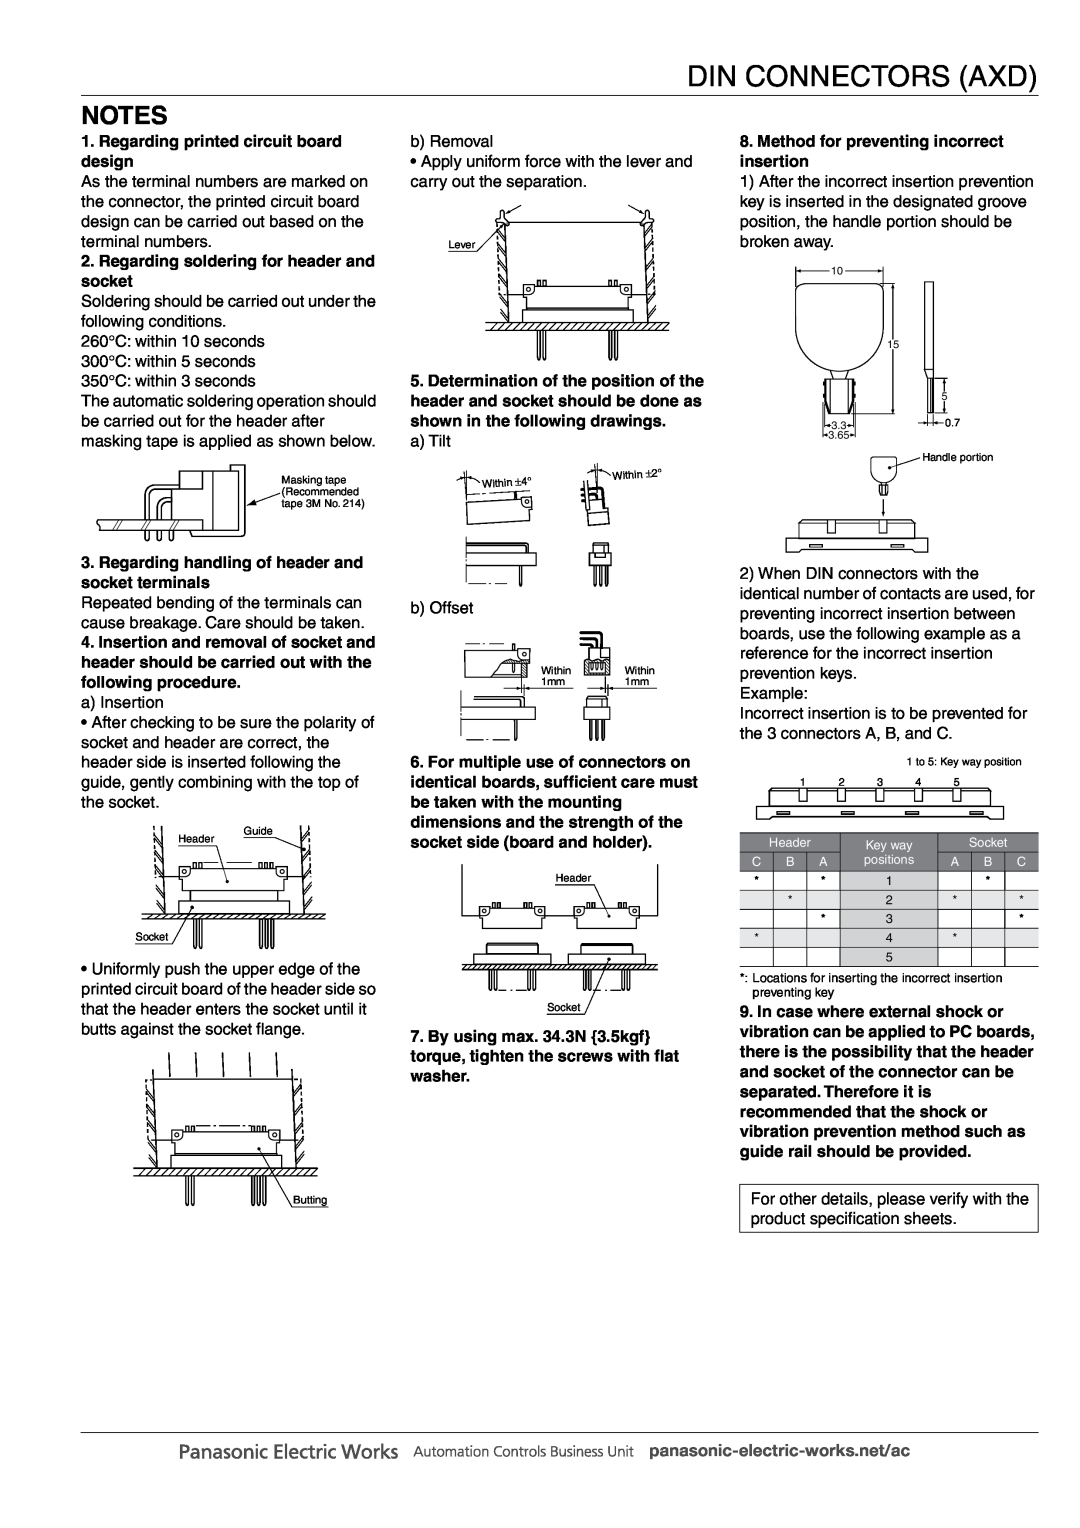 Panasonic DIN Connectors manual Regarding printed circuit board design, Regarding soldering for header and socket 